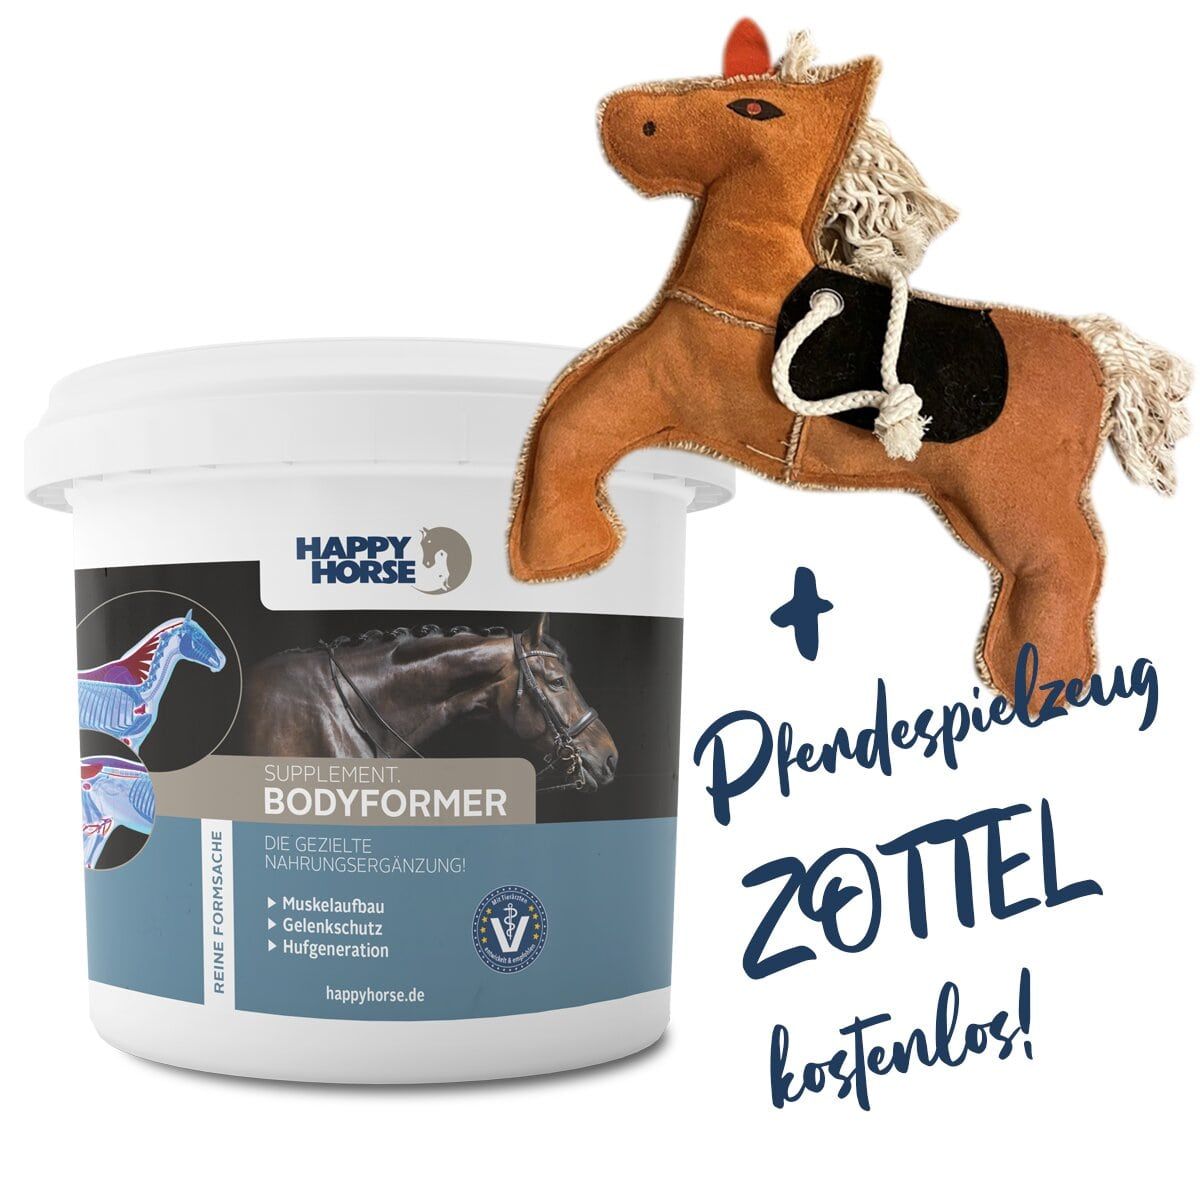 Happy Horse Bodyformer + Zottel Gratis!